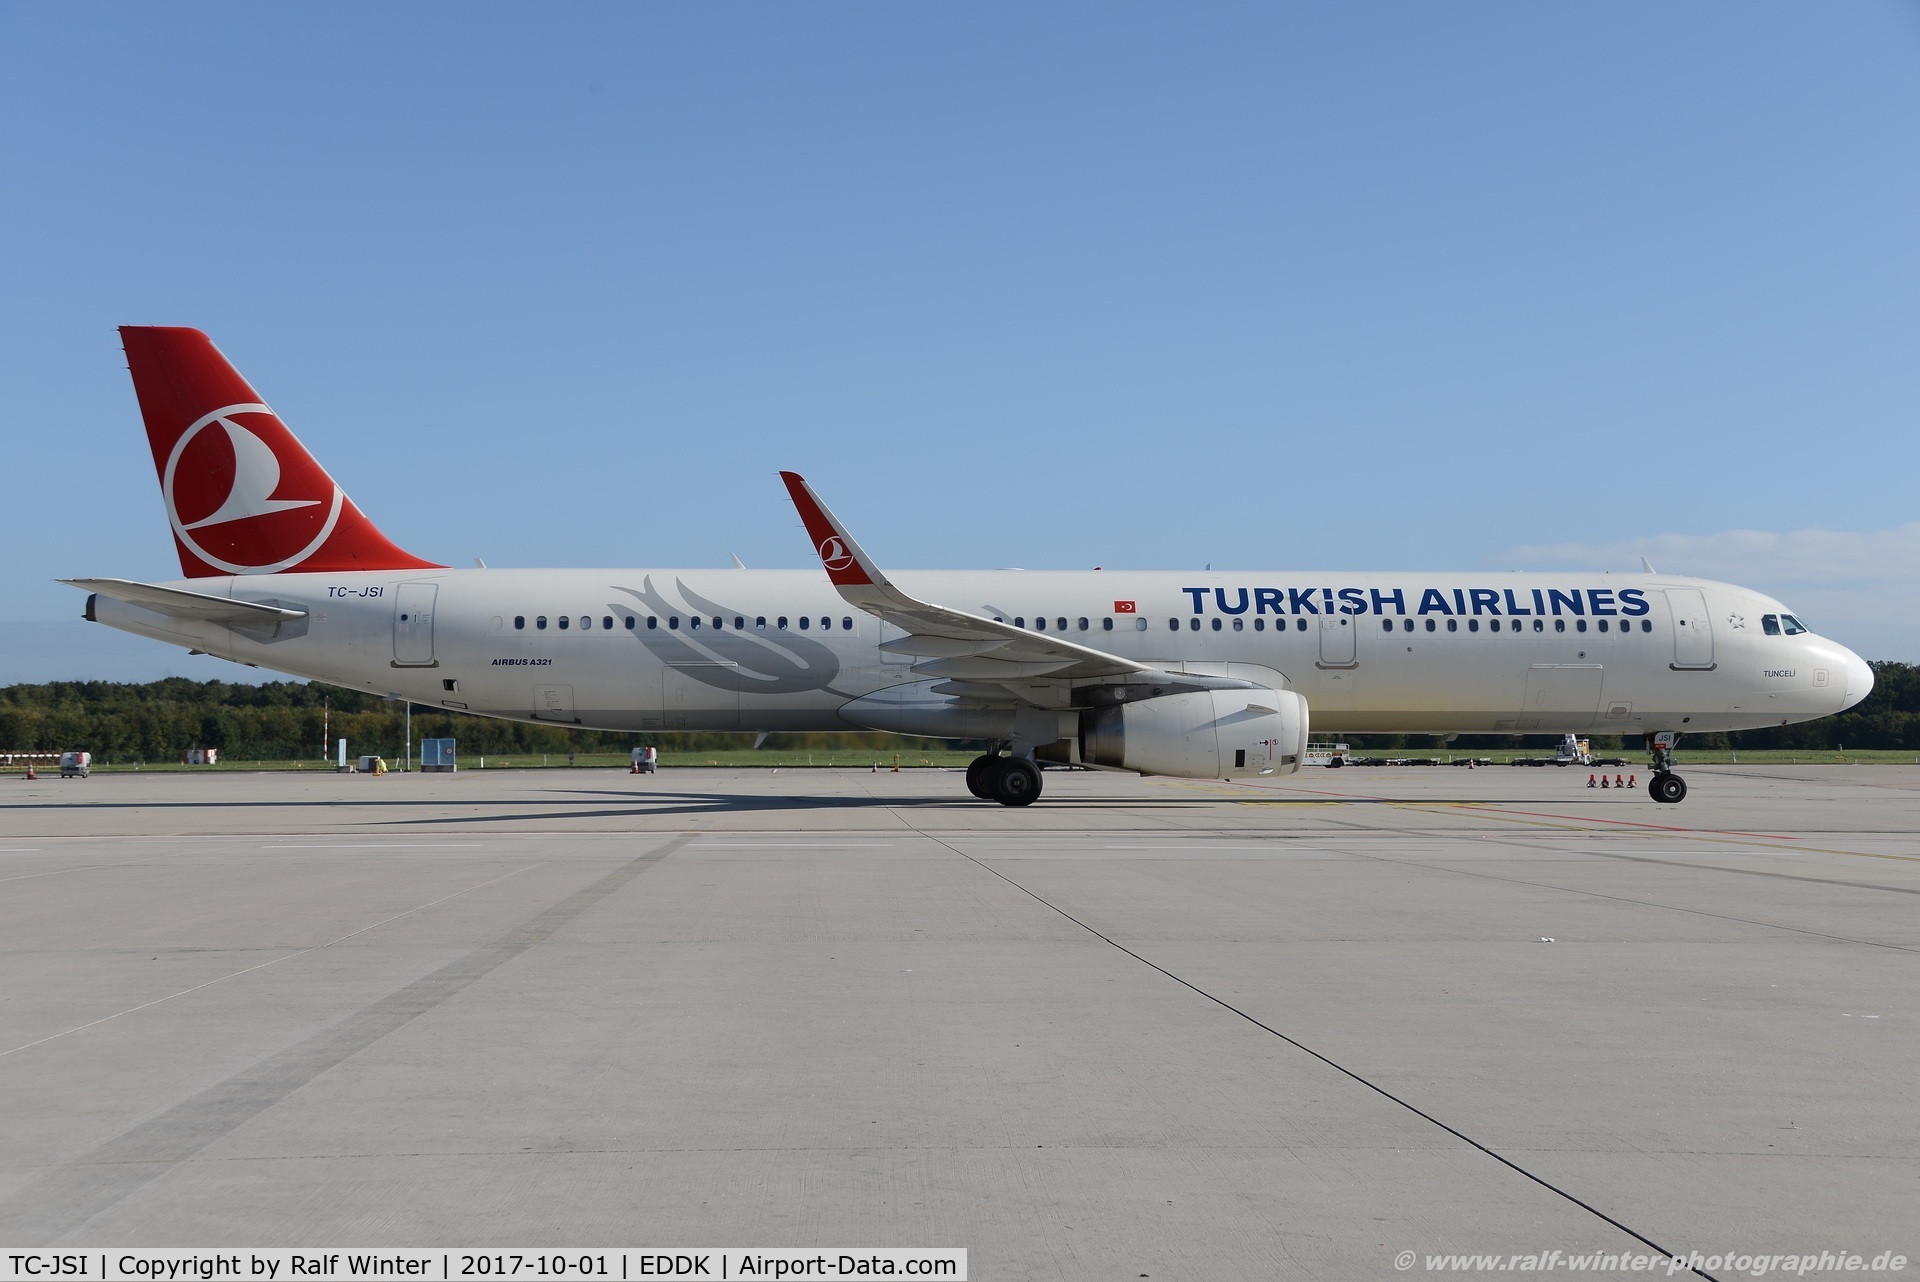 TC-JSI, 2013 Airbus A321-231 C/N 5584, Airbus A321-231 - TK THY Turkish Airlines 'Tunceli' - 5584 - TC-JSI - 01.10.2017 - CGN